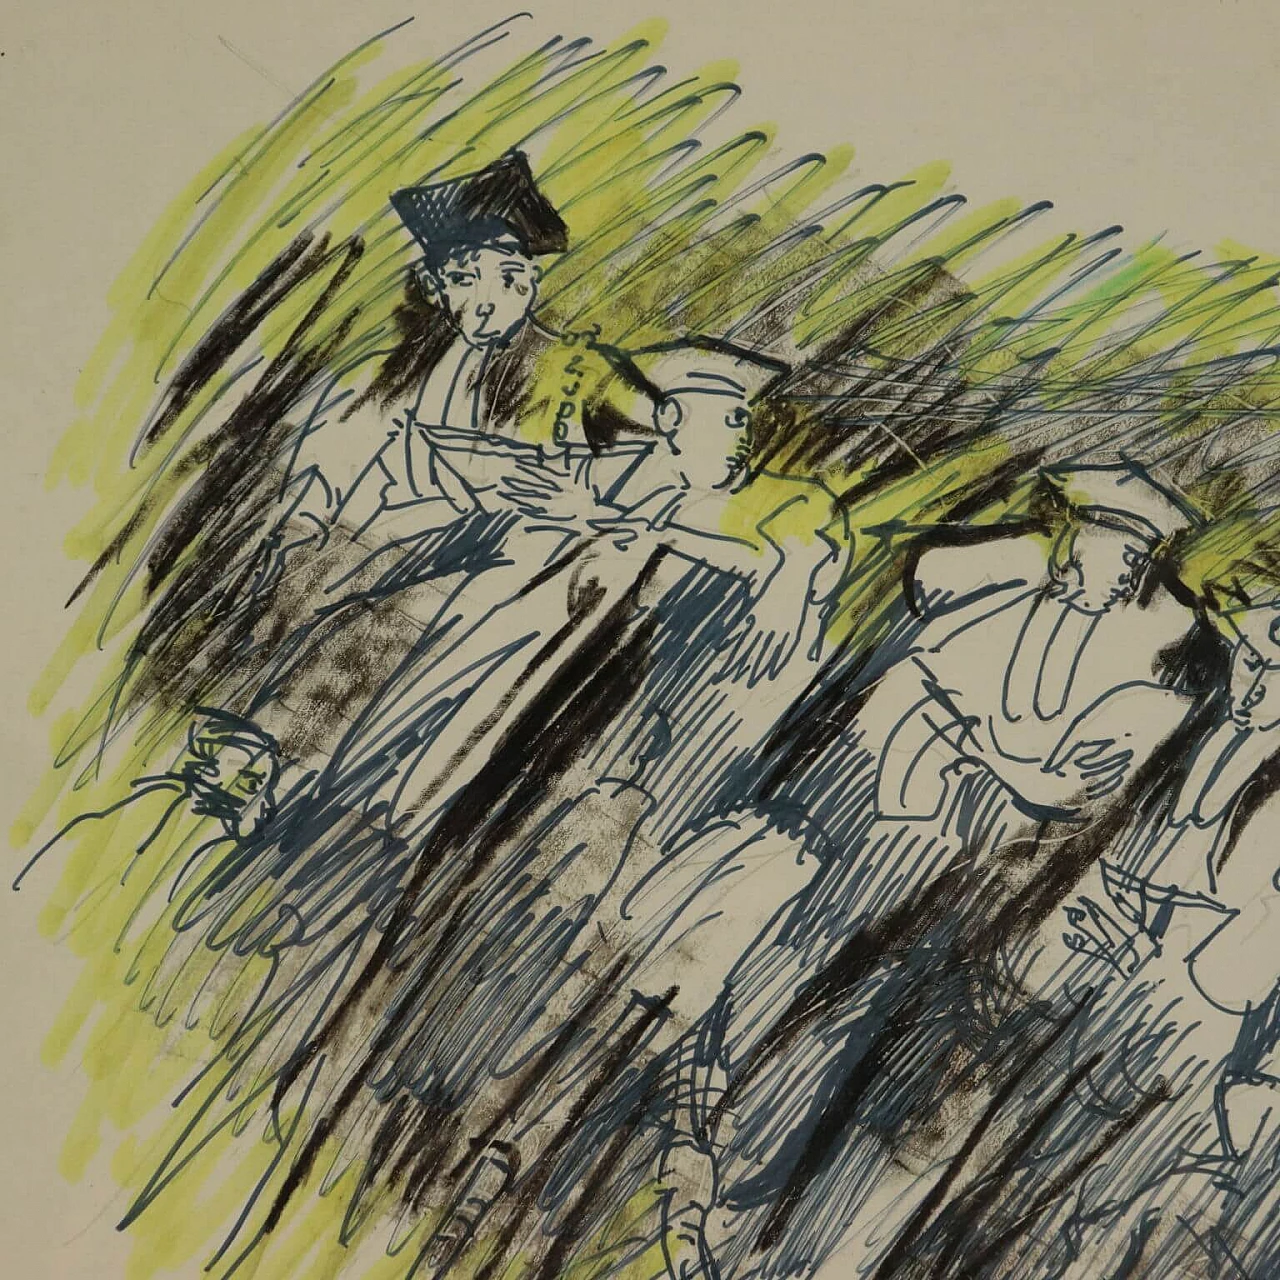 Remo Brindisi, Olocausto, disegno a tecnica mista su carta, 1989 4